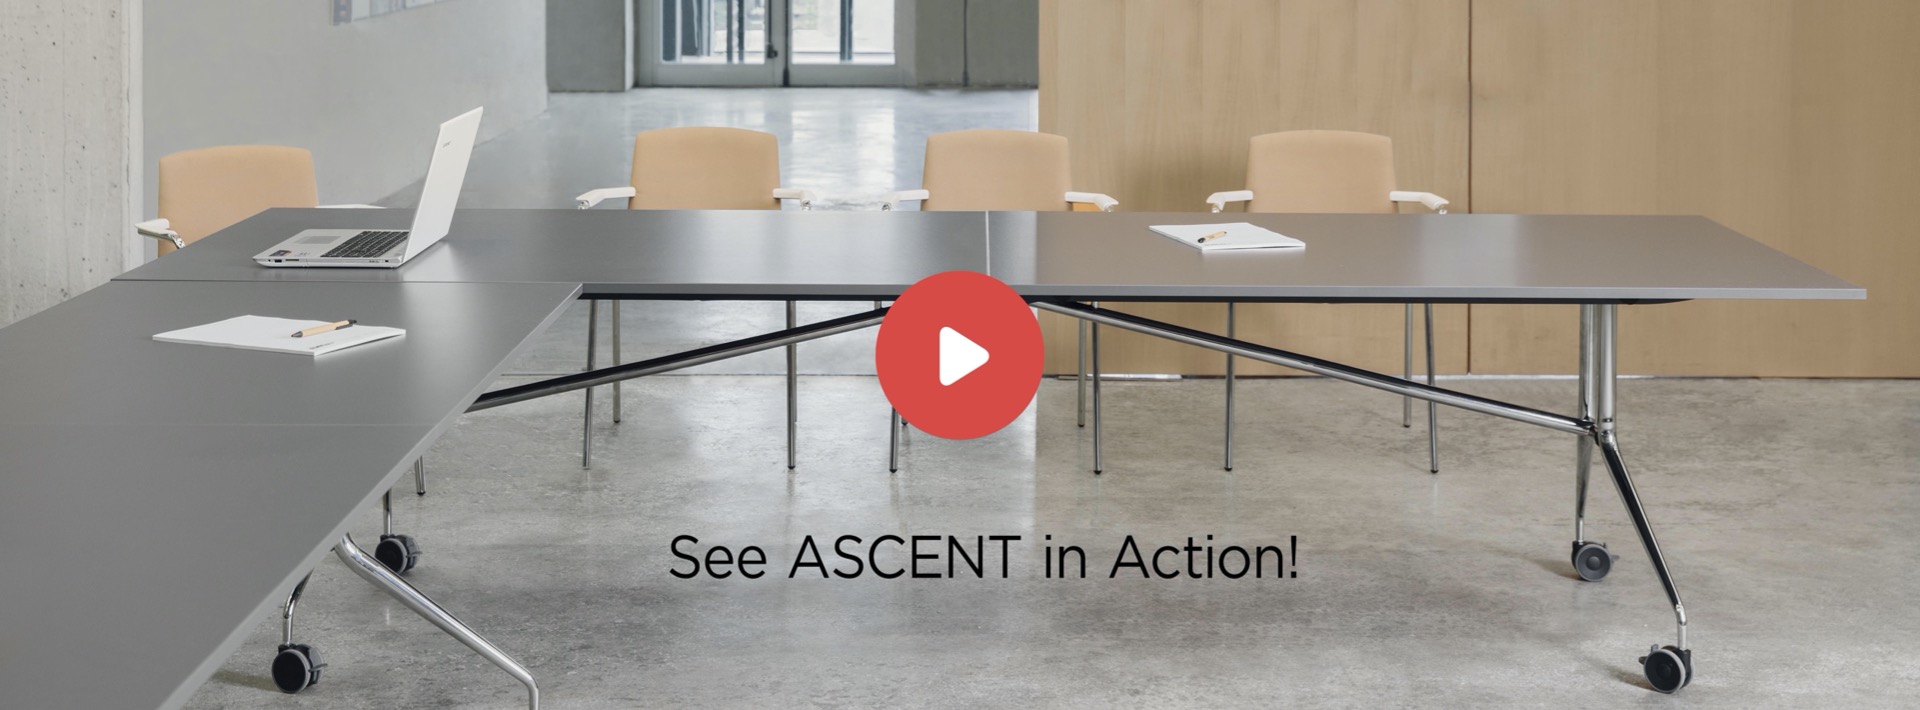 Falcon Ascent Video